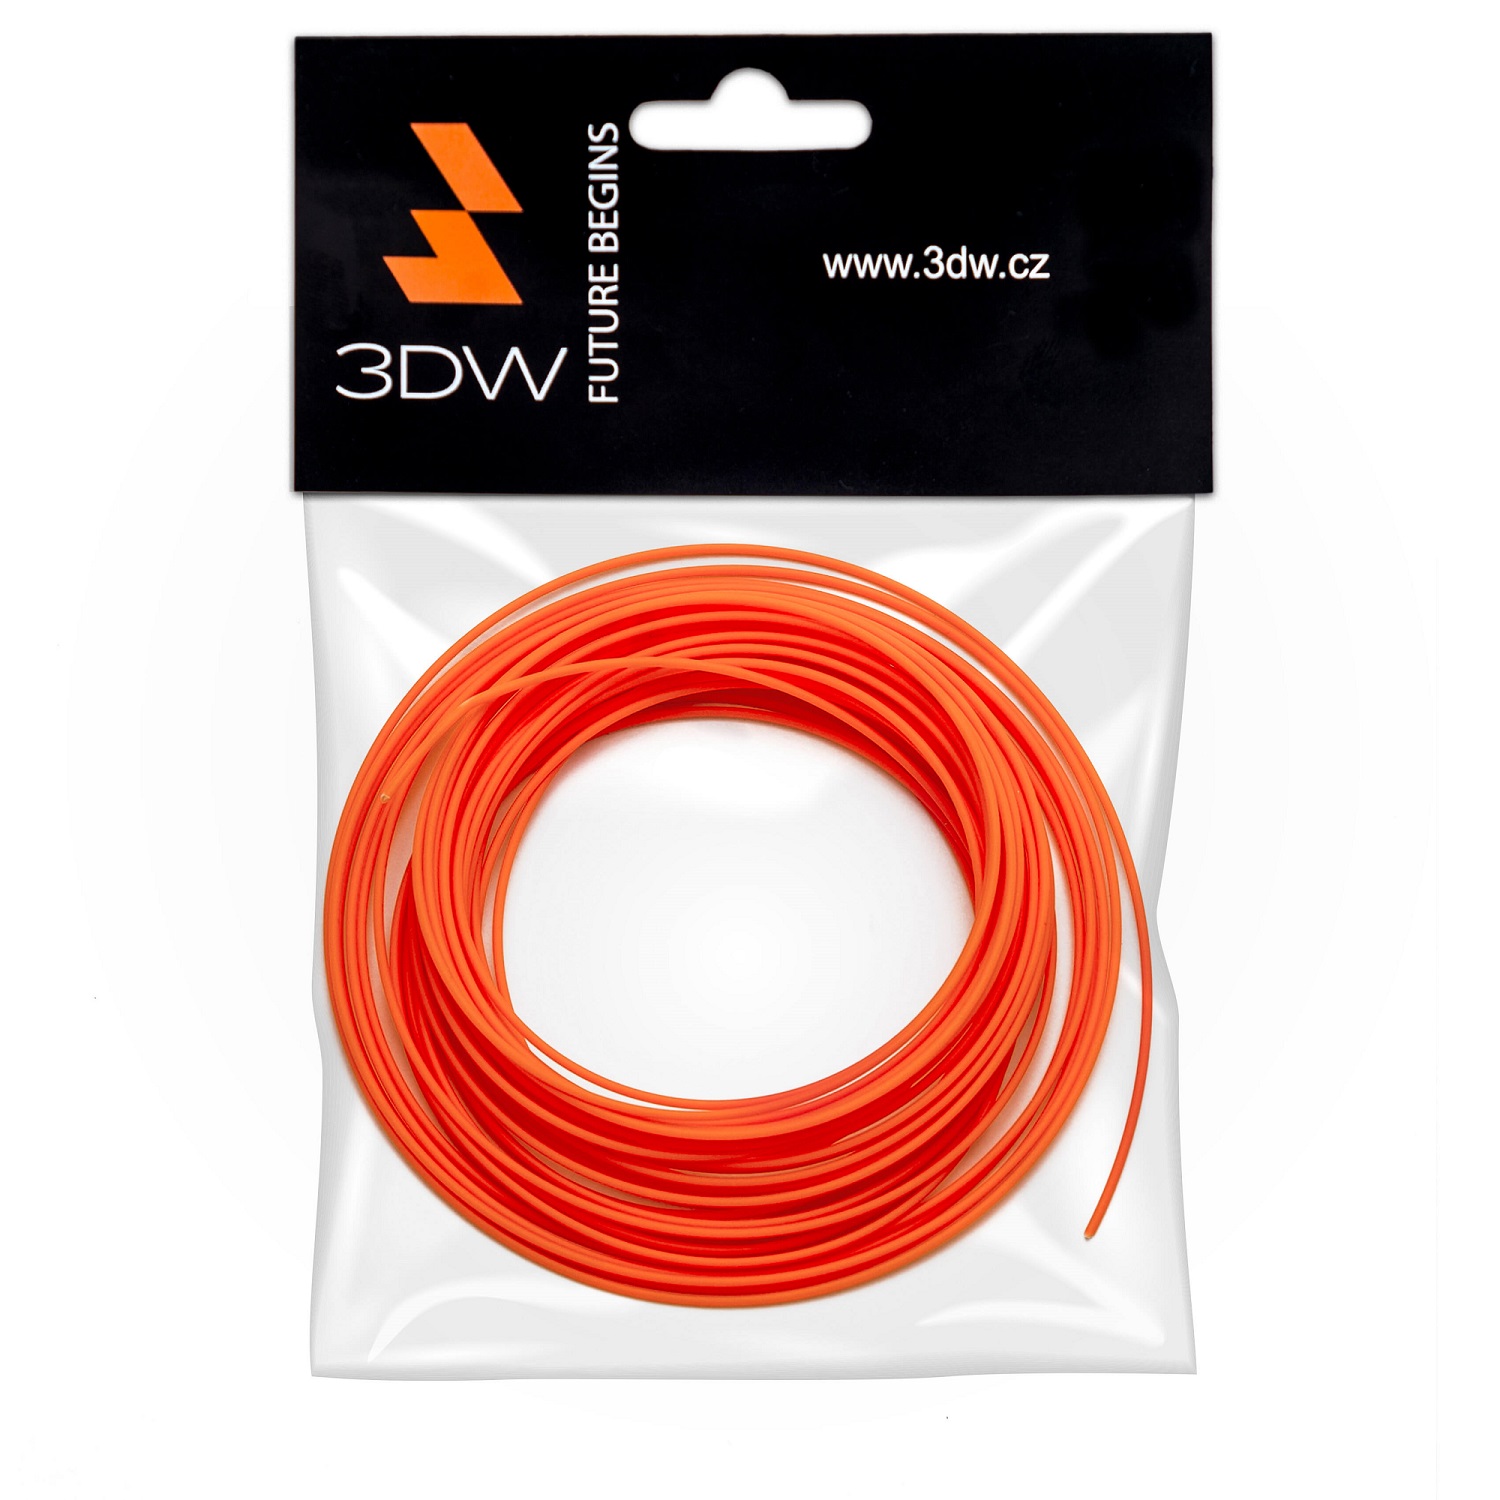 Tisková struna 3DW (filament) ABS, 1,75mm, 10m, oranžová, 220-250°C